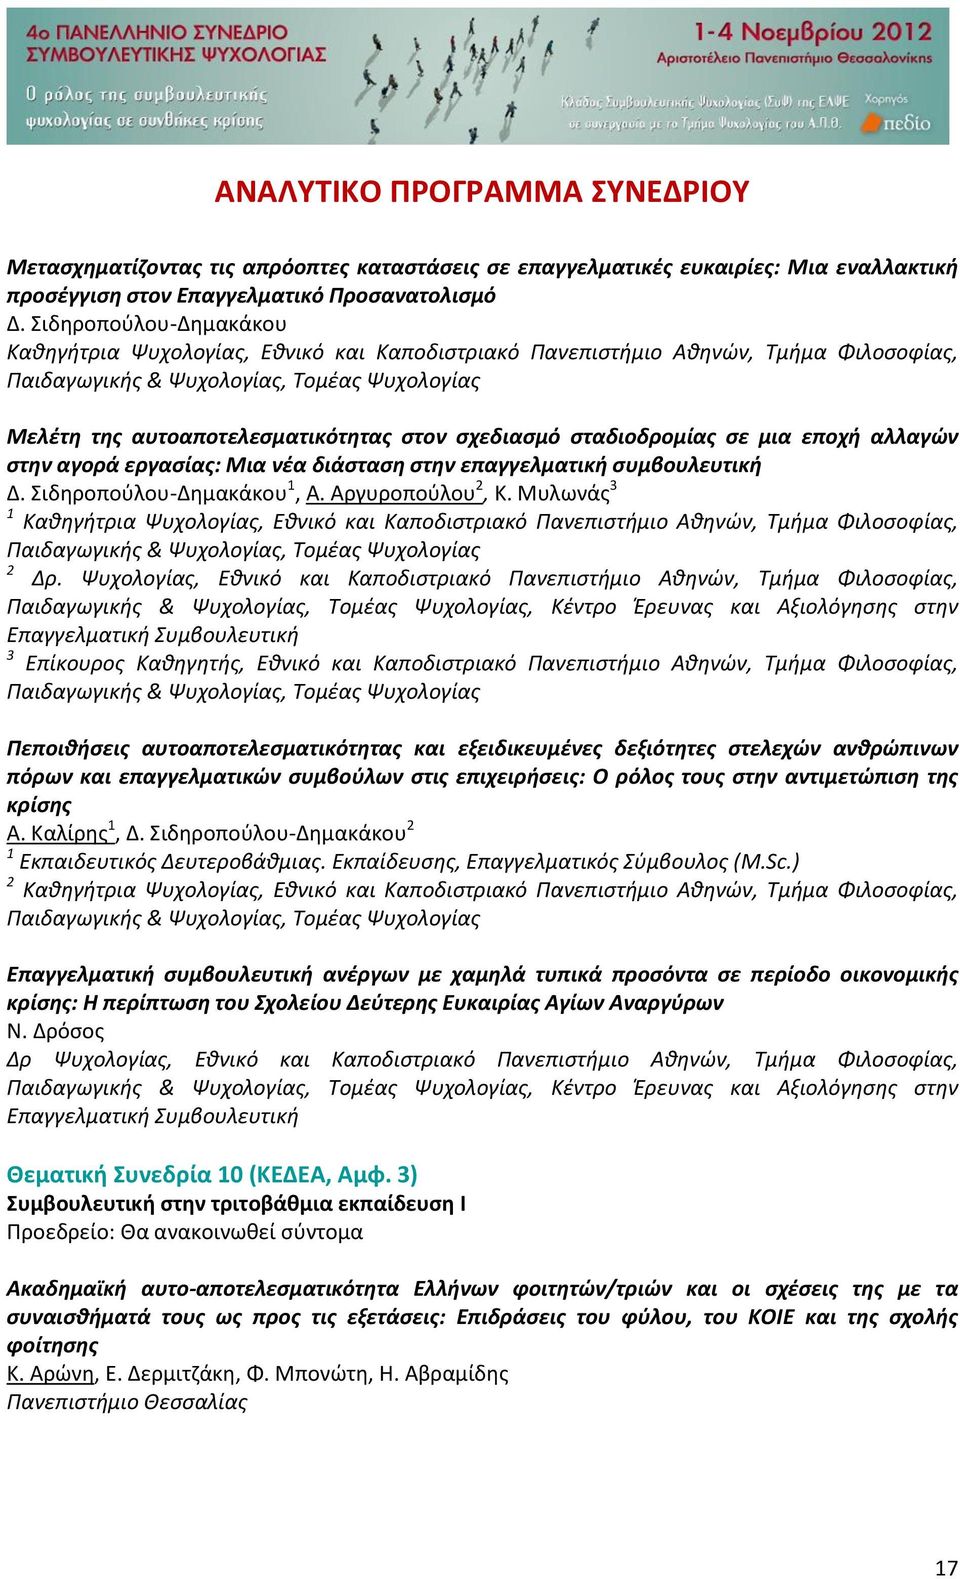 σχεδιασμό σταδιοδρομίας σε μια εποχή αλλαγών στην αγορά εργασίας: Μια νέα διάσταση στην επαγγελματική συμβουλευτική Δ. Σιδηροπούλου-Δημακάκου 1, Α. Αργυροπούλου 2, Κ.